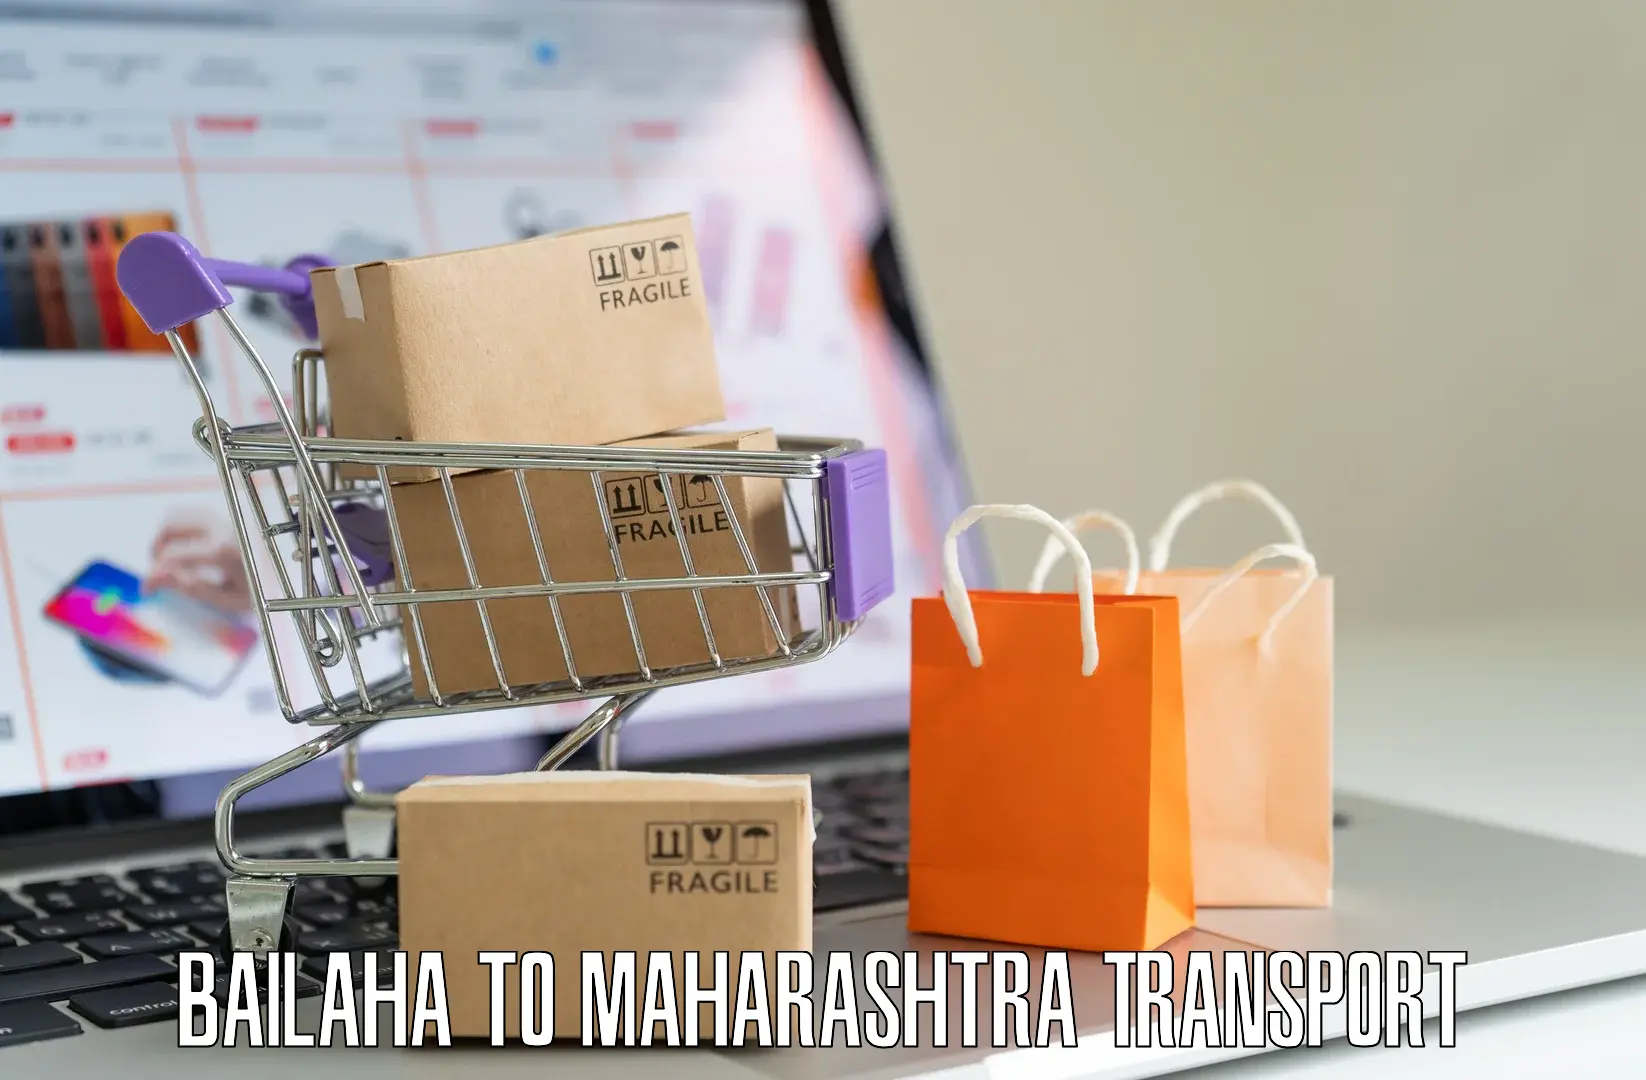 Commercial transport service Bailaha to Maharashtra